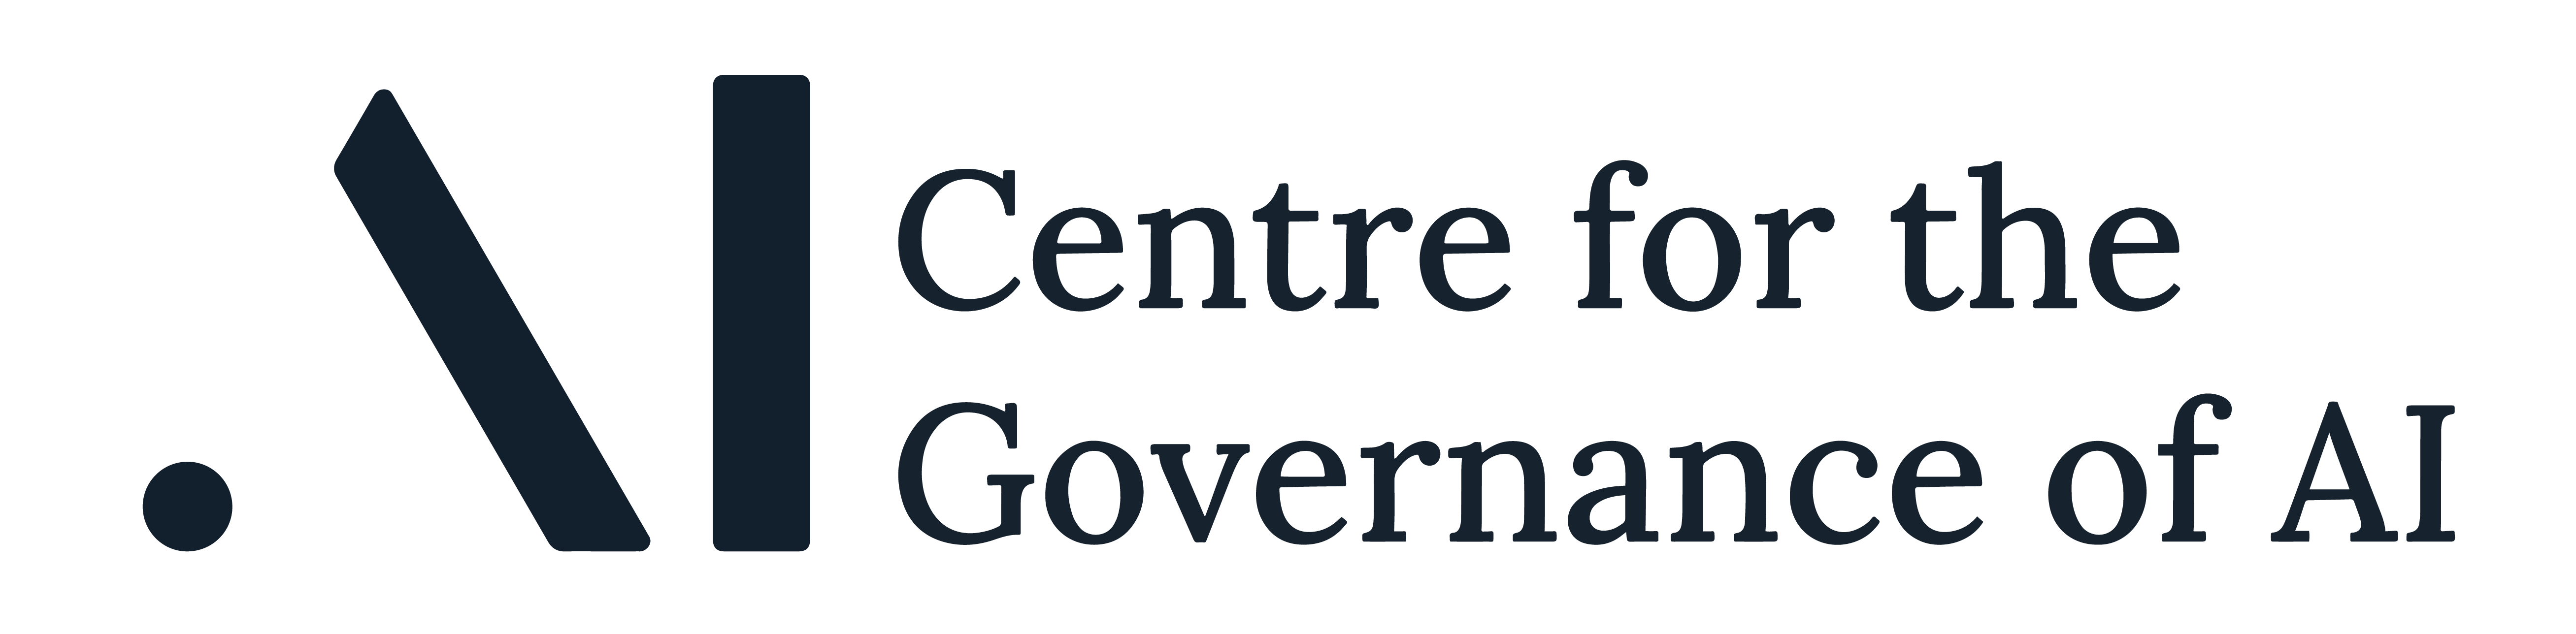 Centre for the Governance of AI (GovAI)